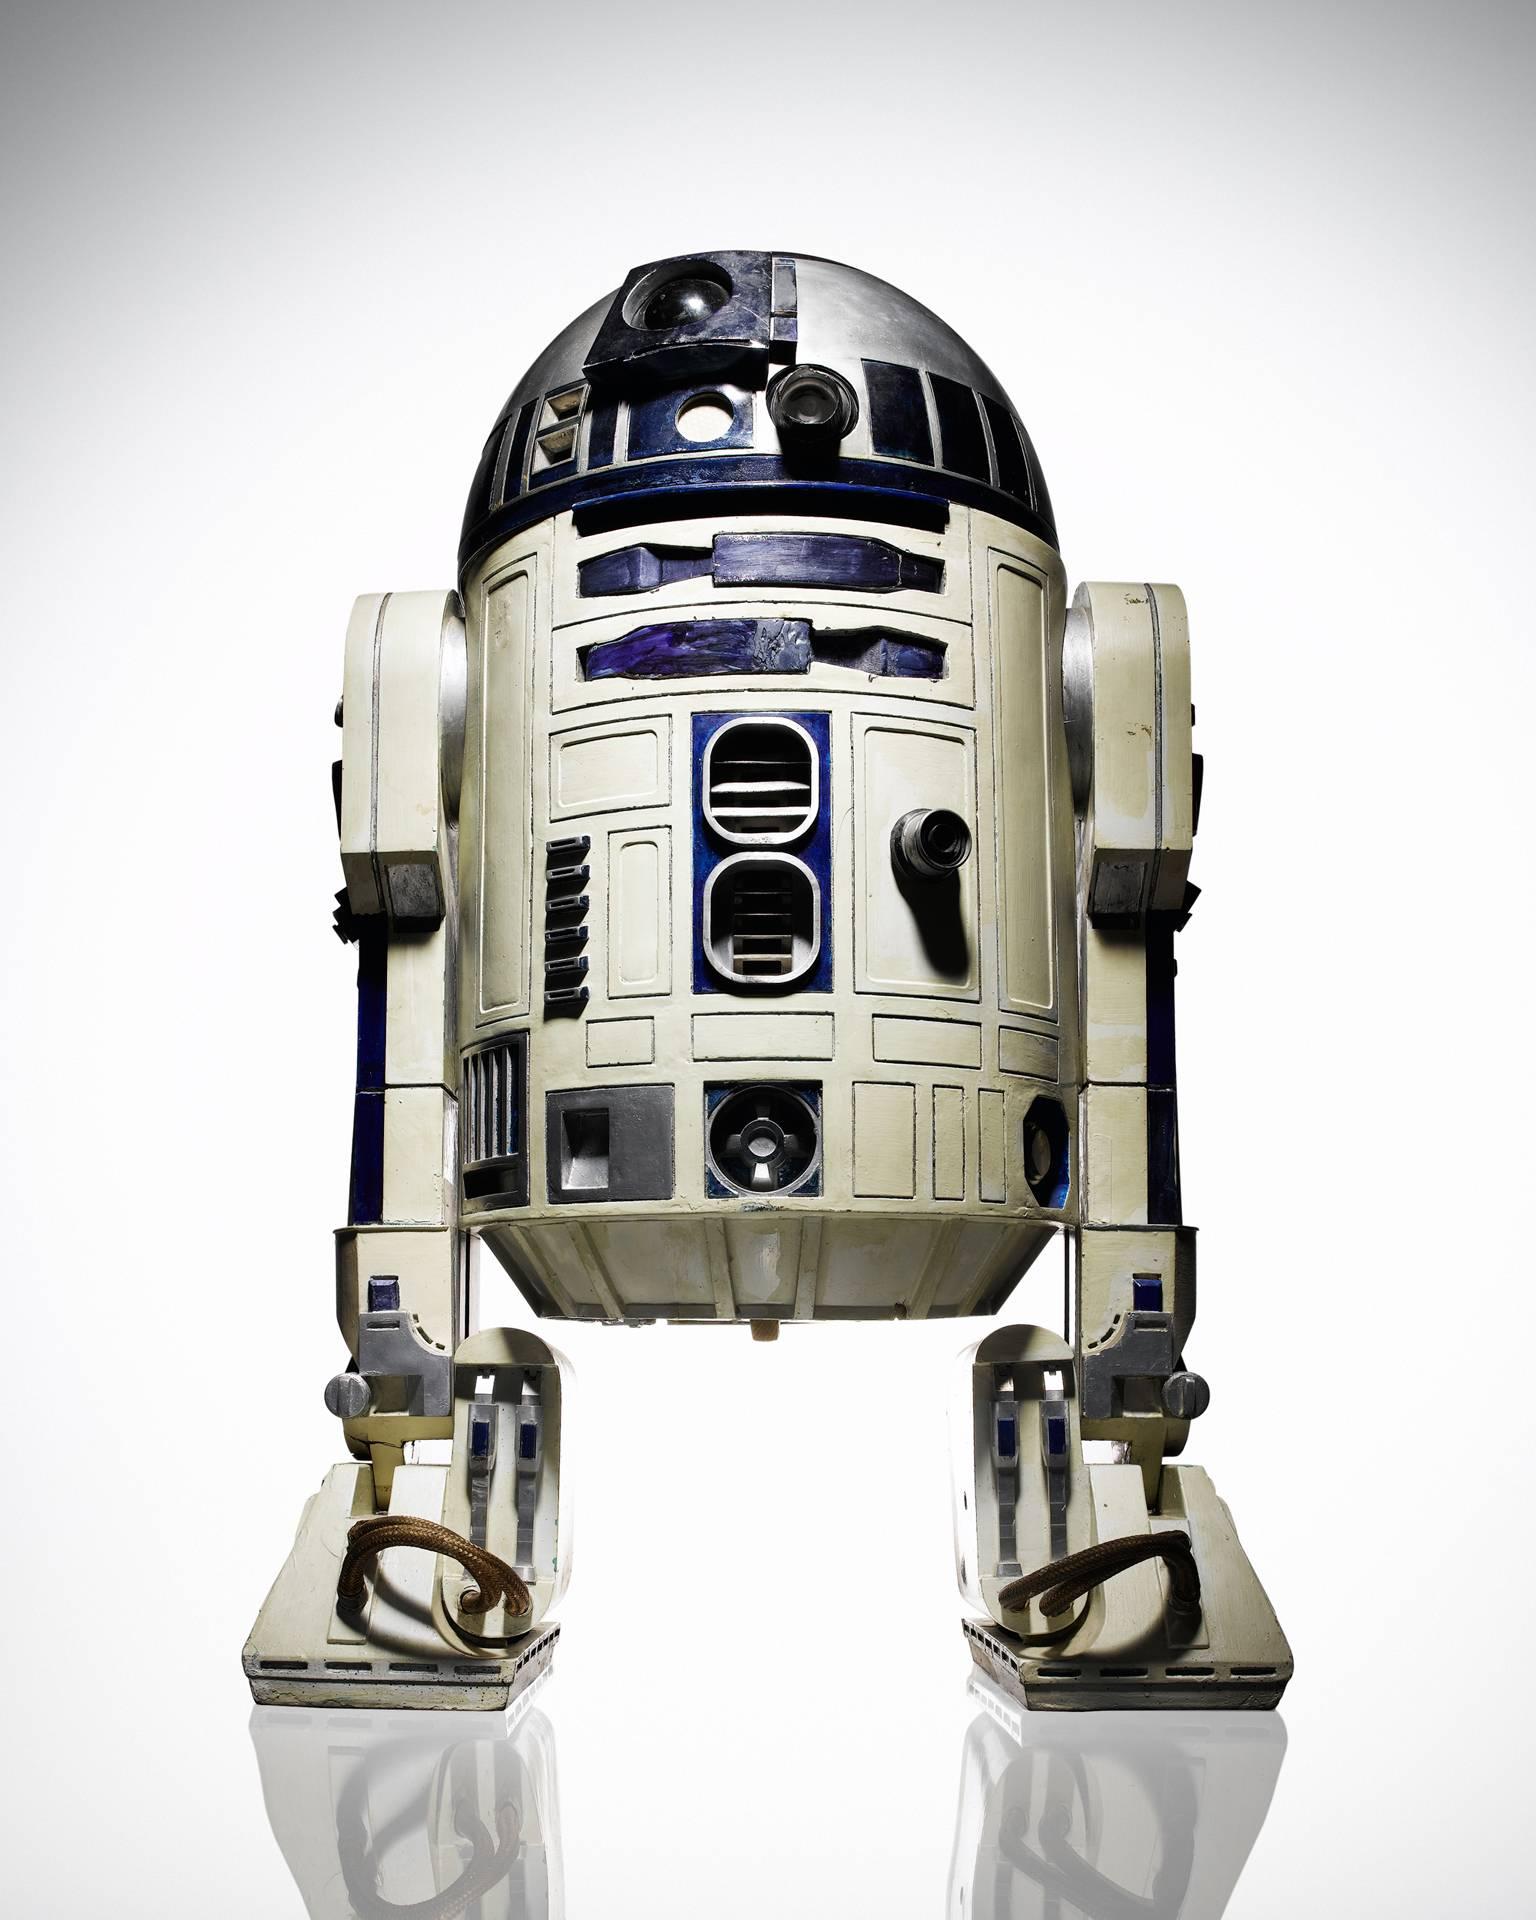 Tom Schierlitz Color Photograph – Star Wars R2-D2 – Großformatfotografie des ikonischenroid-Roboters im Originalschliff